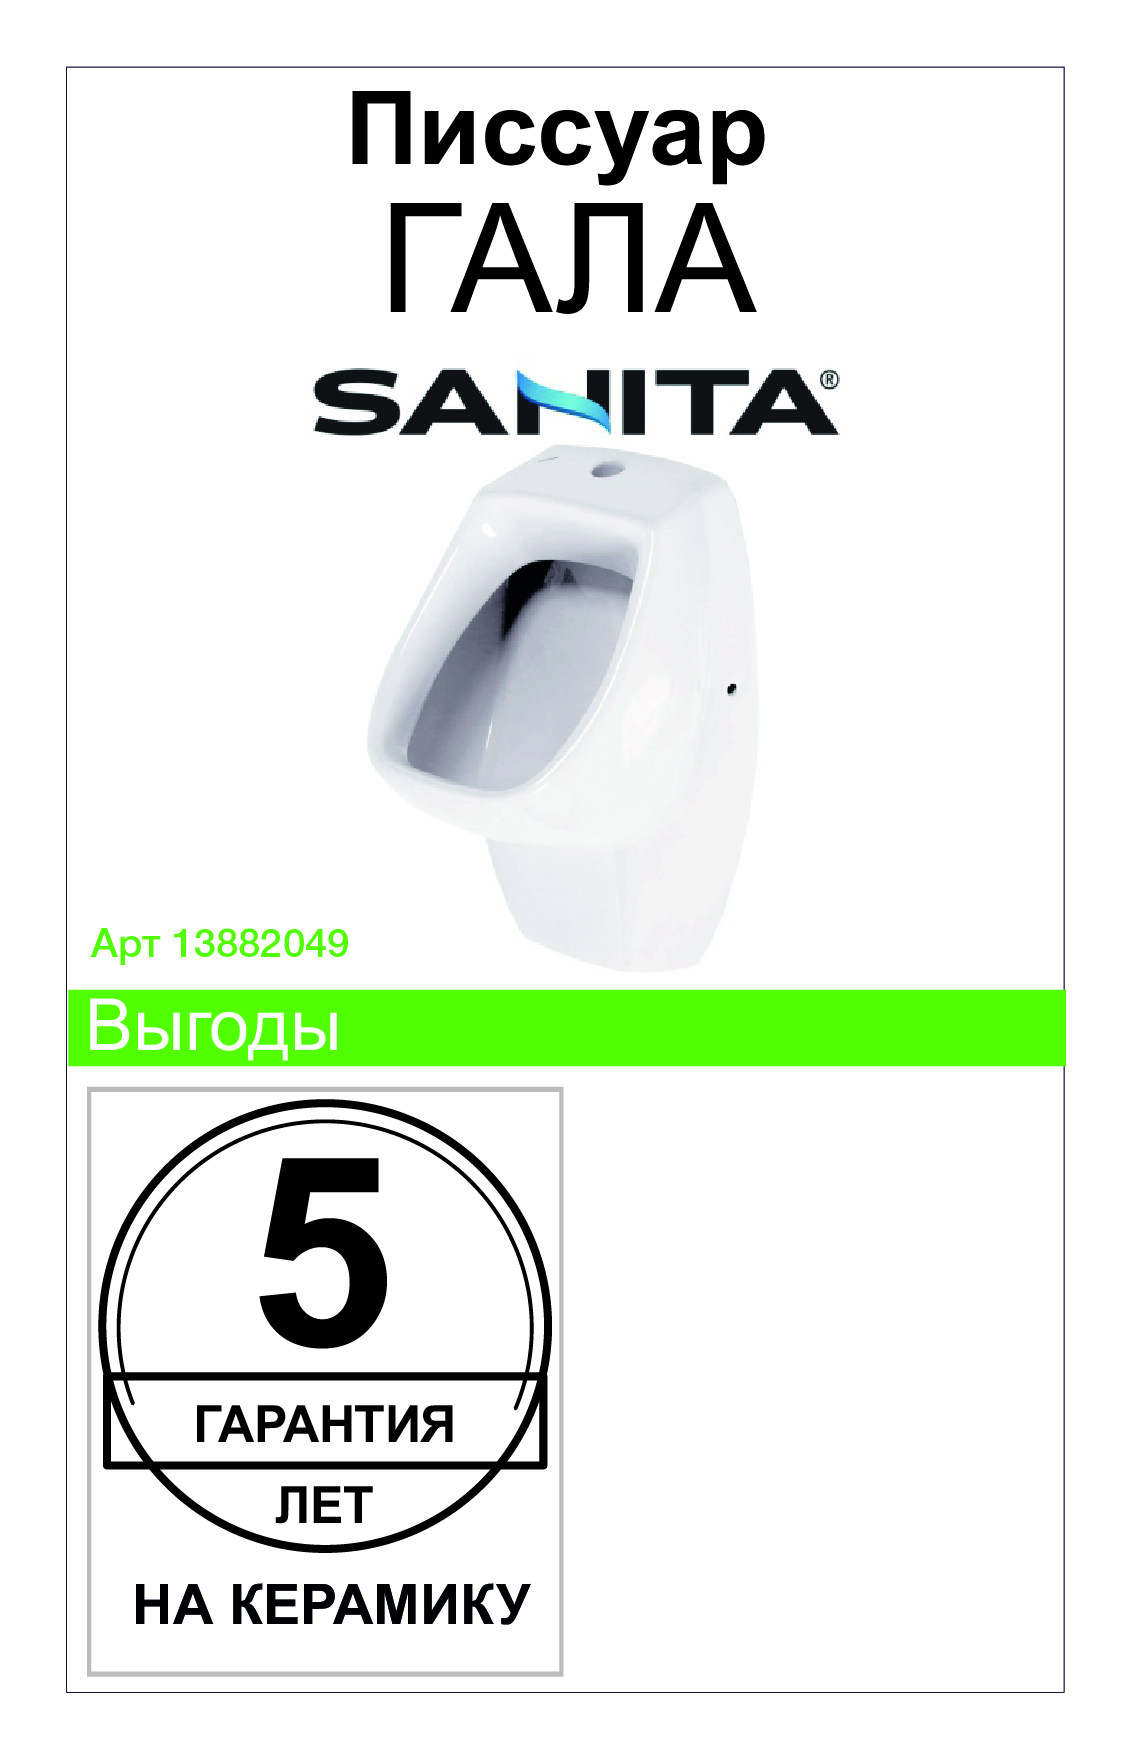  Santek Гала 31х54 см –   по цене 17860 тенге .